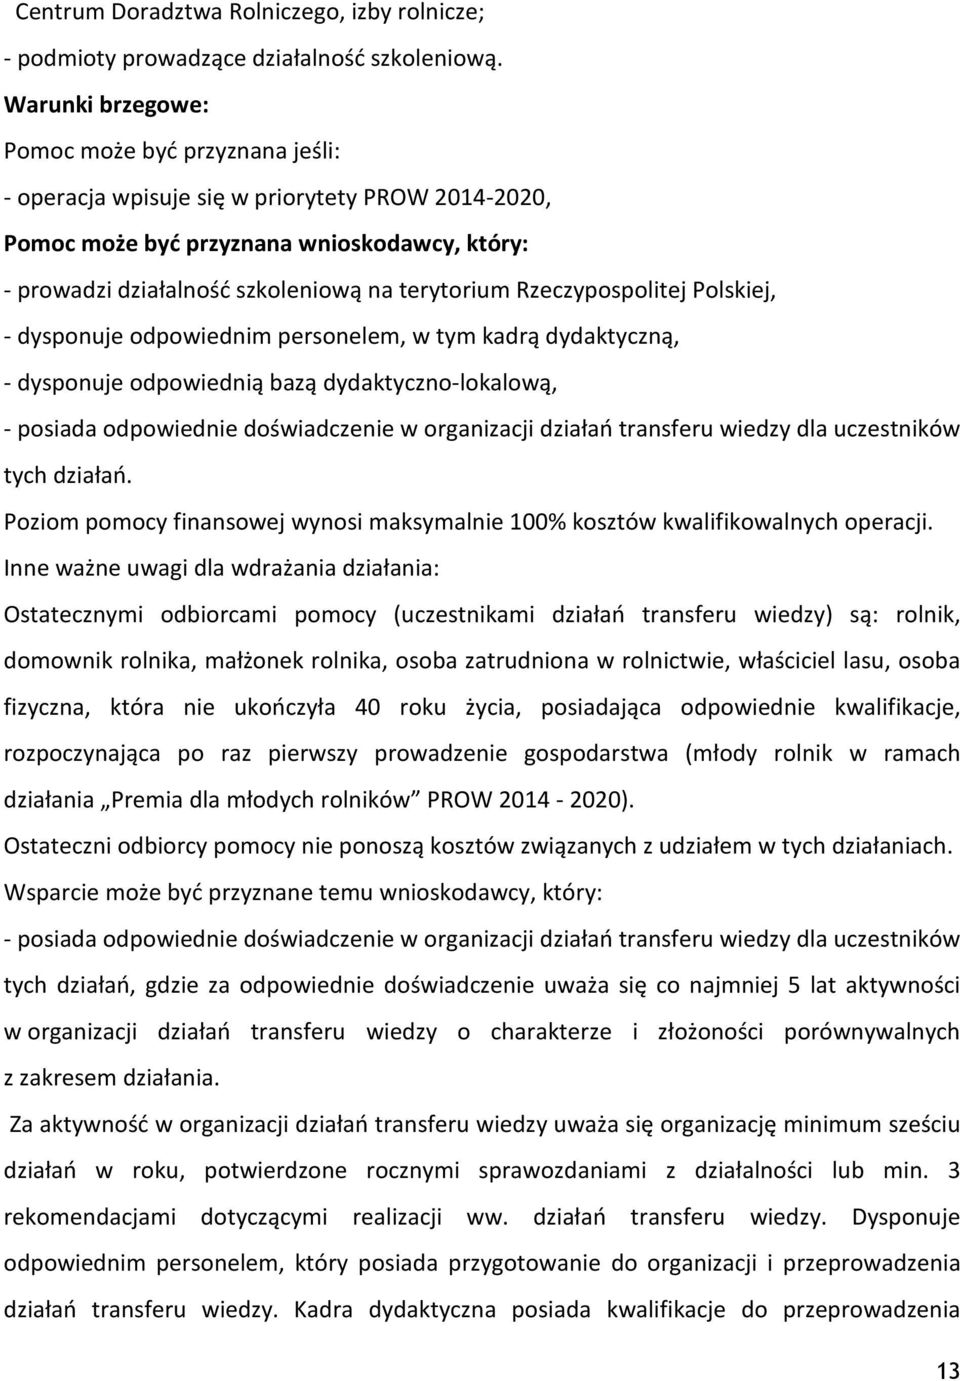 Rzeczypospolitej Polskiej, - dysponuje odpowiednim personelem, w tym kadrą dydaktyczną, - dysponuje odpowiednią bazą dydaktyczno-lokalową, - posiada odpowiednie doświadczenie w organizacji działań